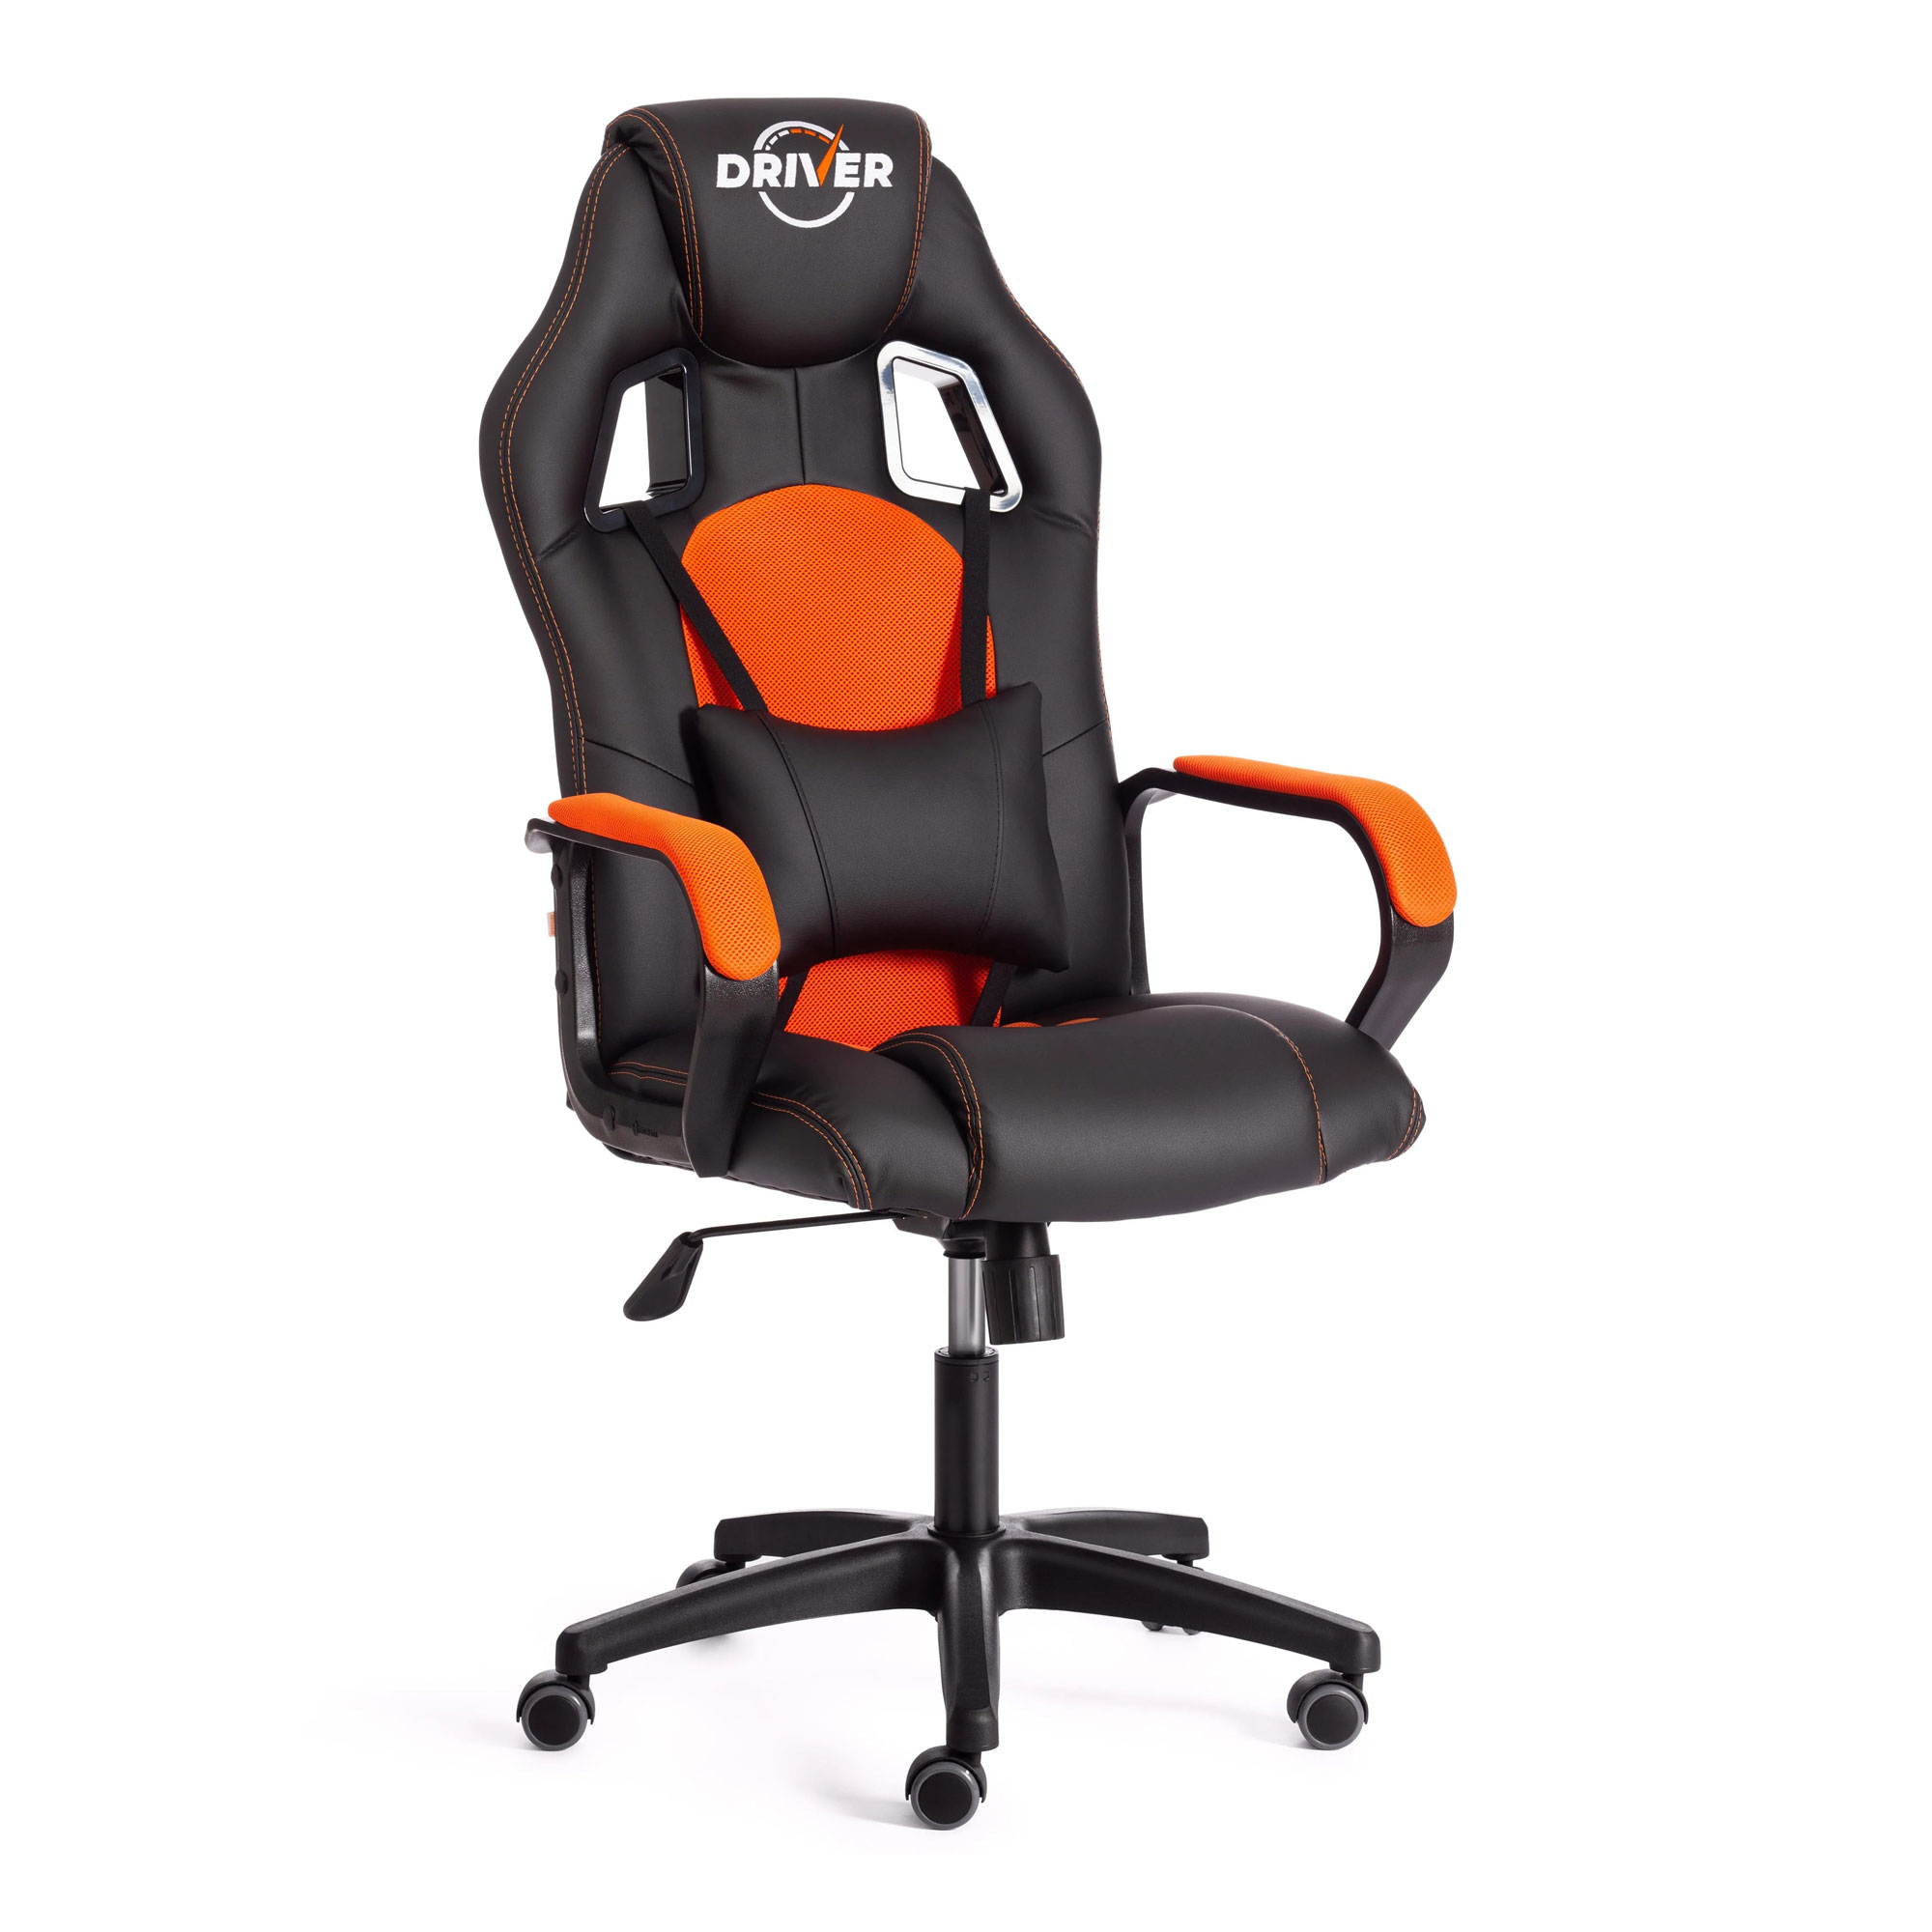 Кресло компьютерное TC Driver искусственная кожа чёрное с оранжевым 55х49х126 см кресло компьютерное tc neo искусственная кожа чёрное с красным 64х49х122 см